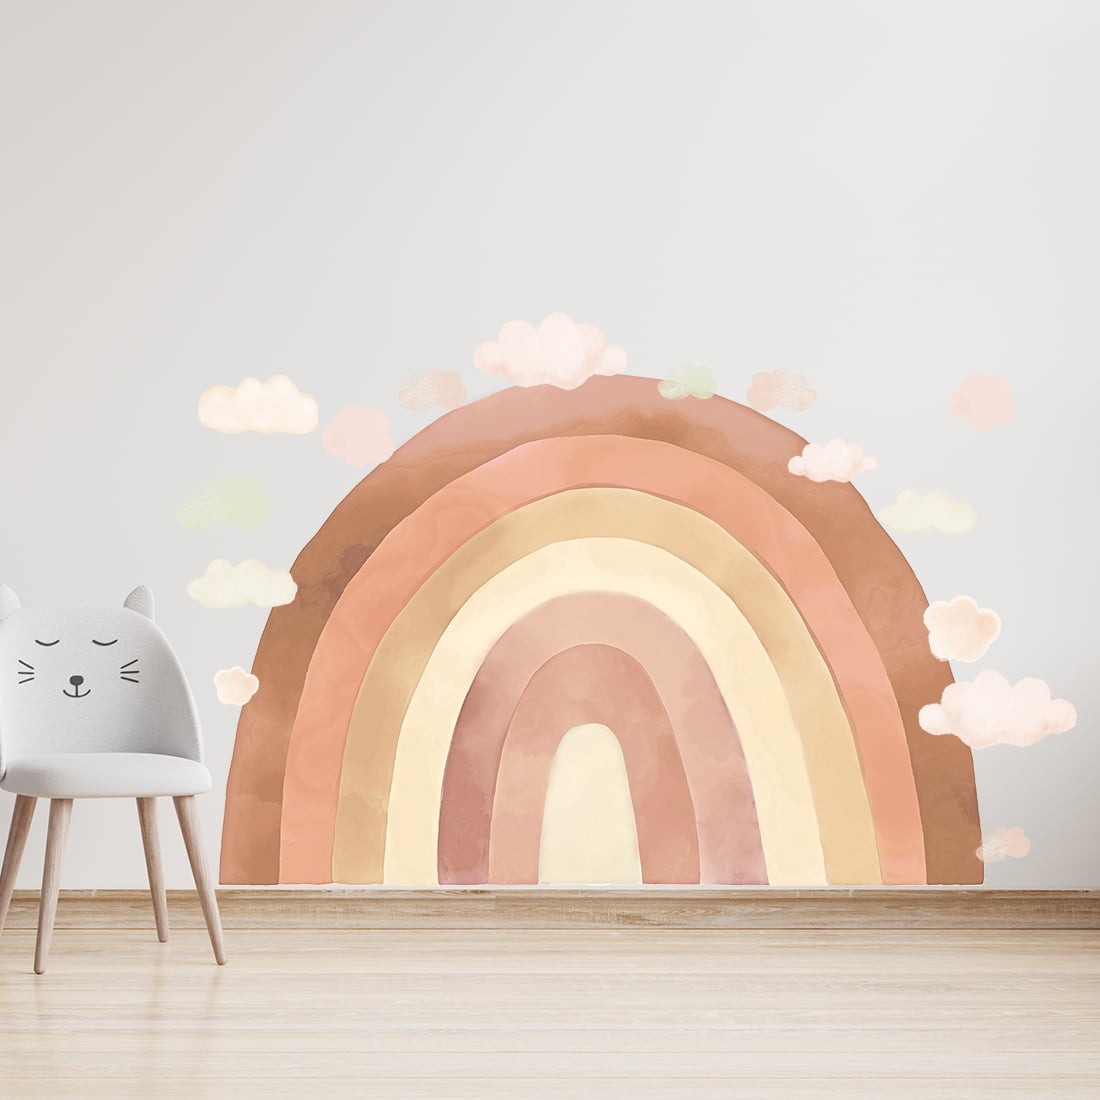 Kinderzimmer mit Wandsticker Regenbogen in beige Tönen mit bunten Wolken mit Grössen angezeigt